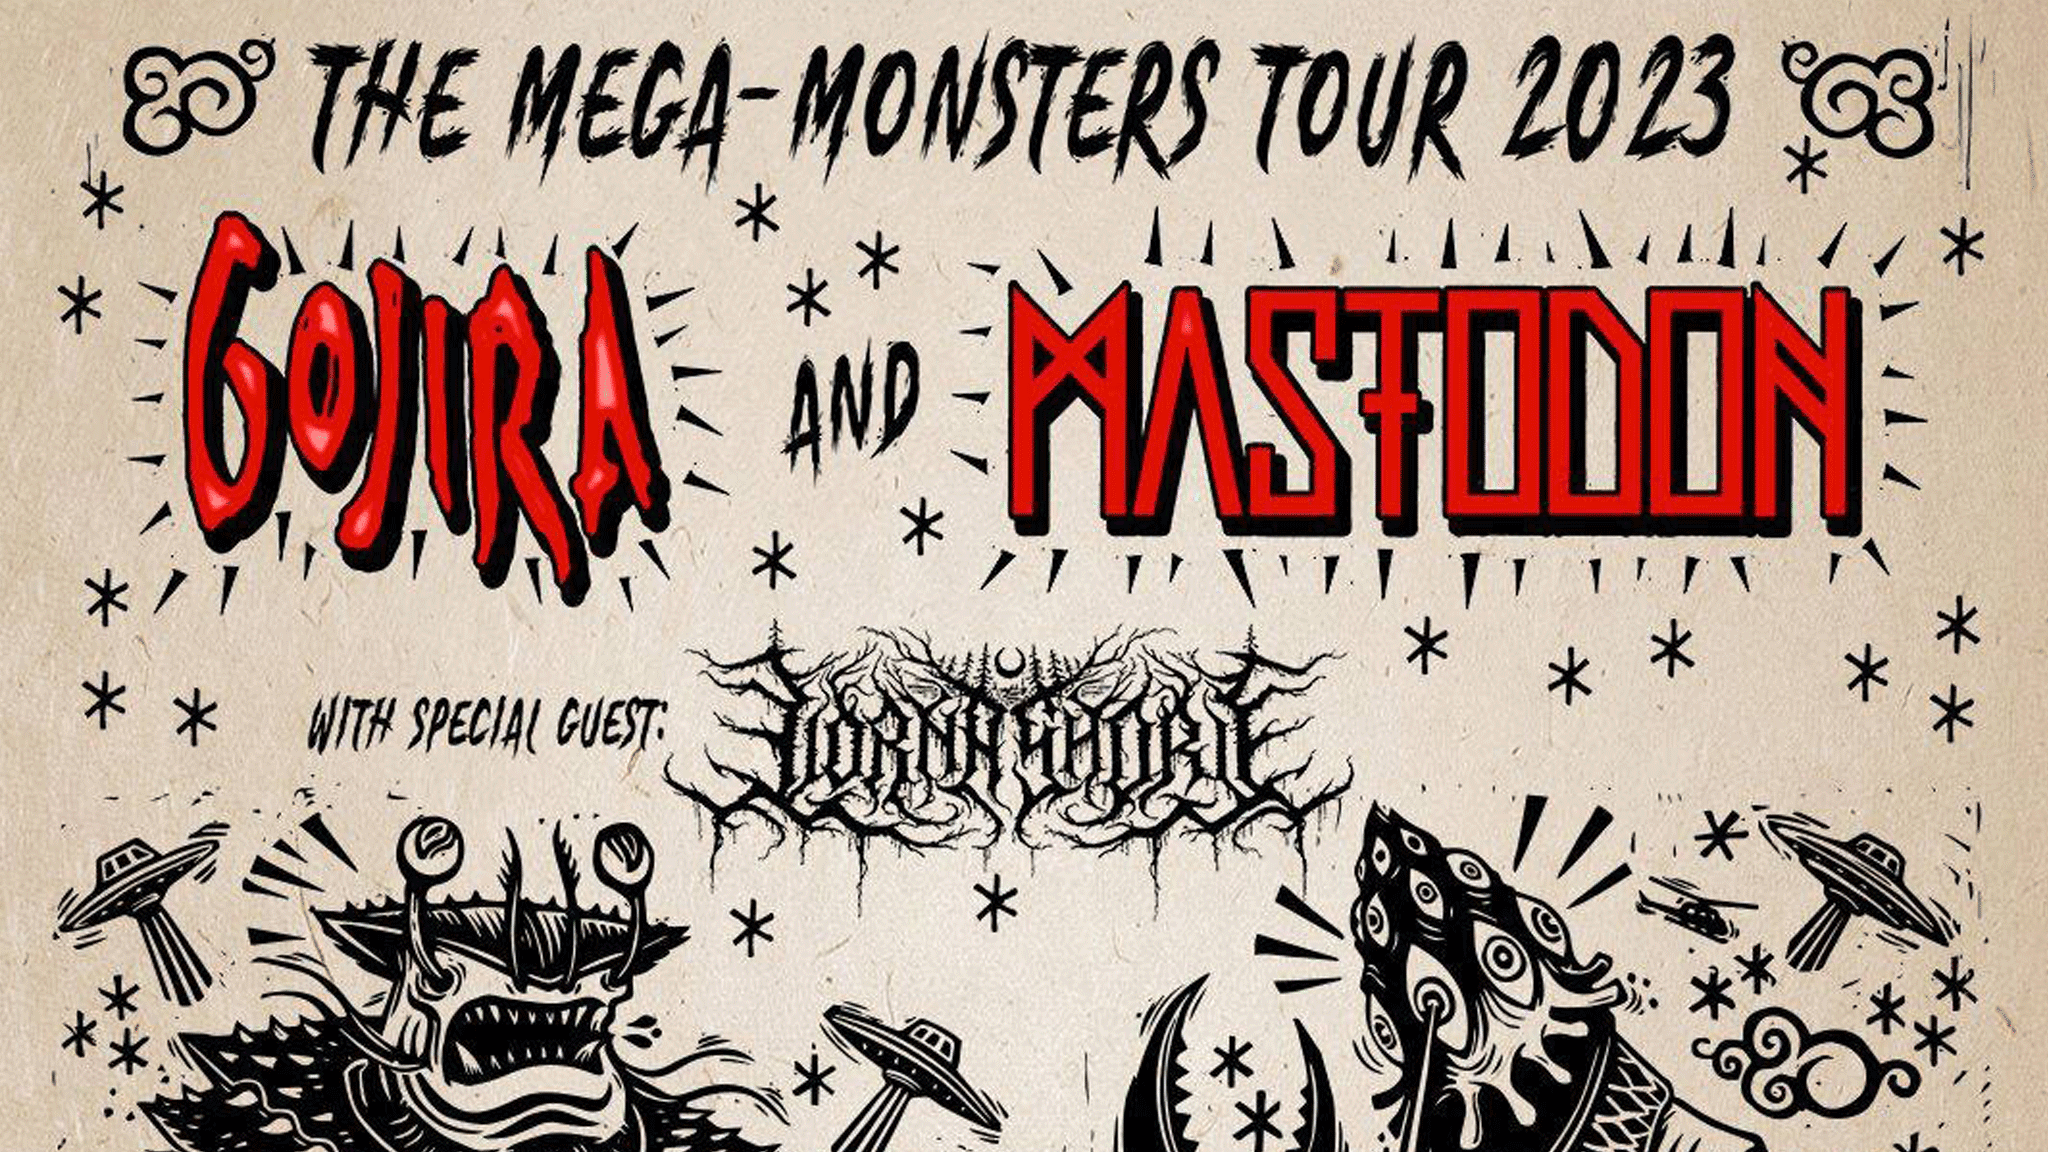 GOJIRA e MASTODON anunciam The MegaMonster Tour em São Paulo Vou de